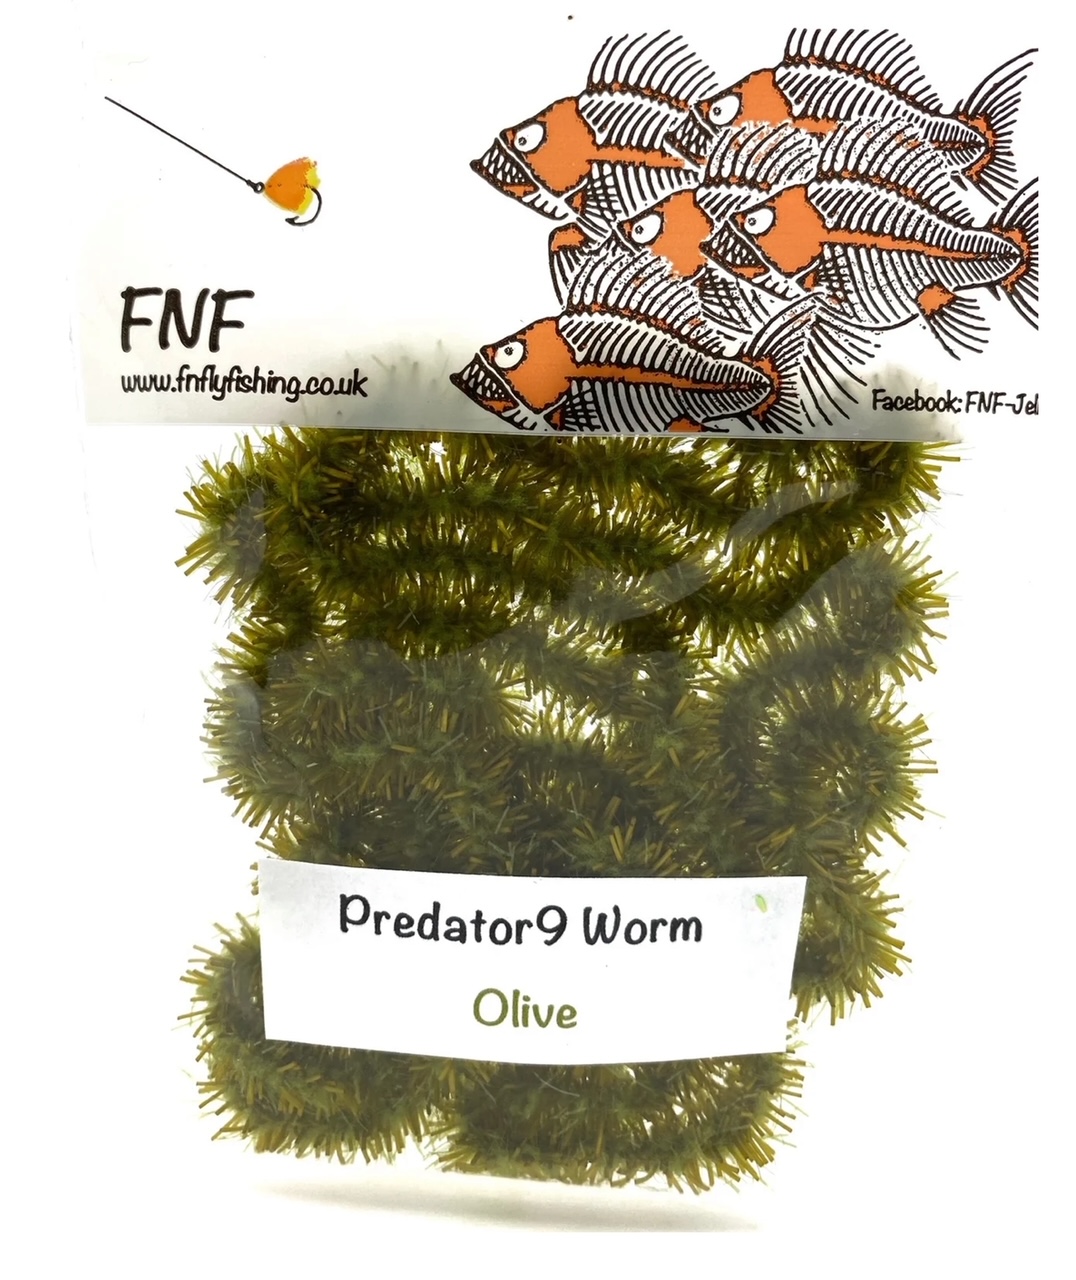 FNF Predator9 Worm - Olive